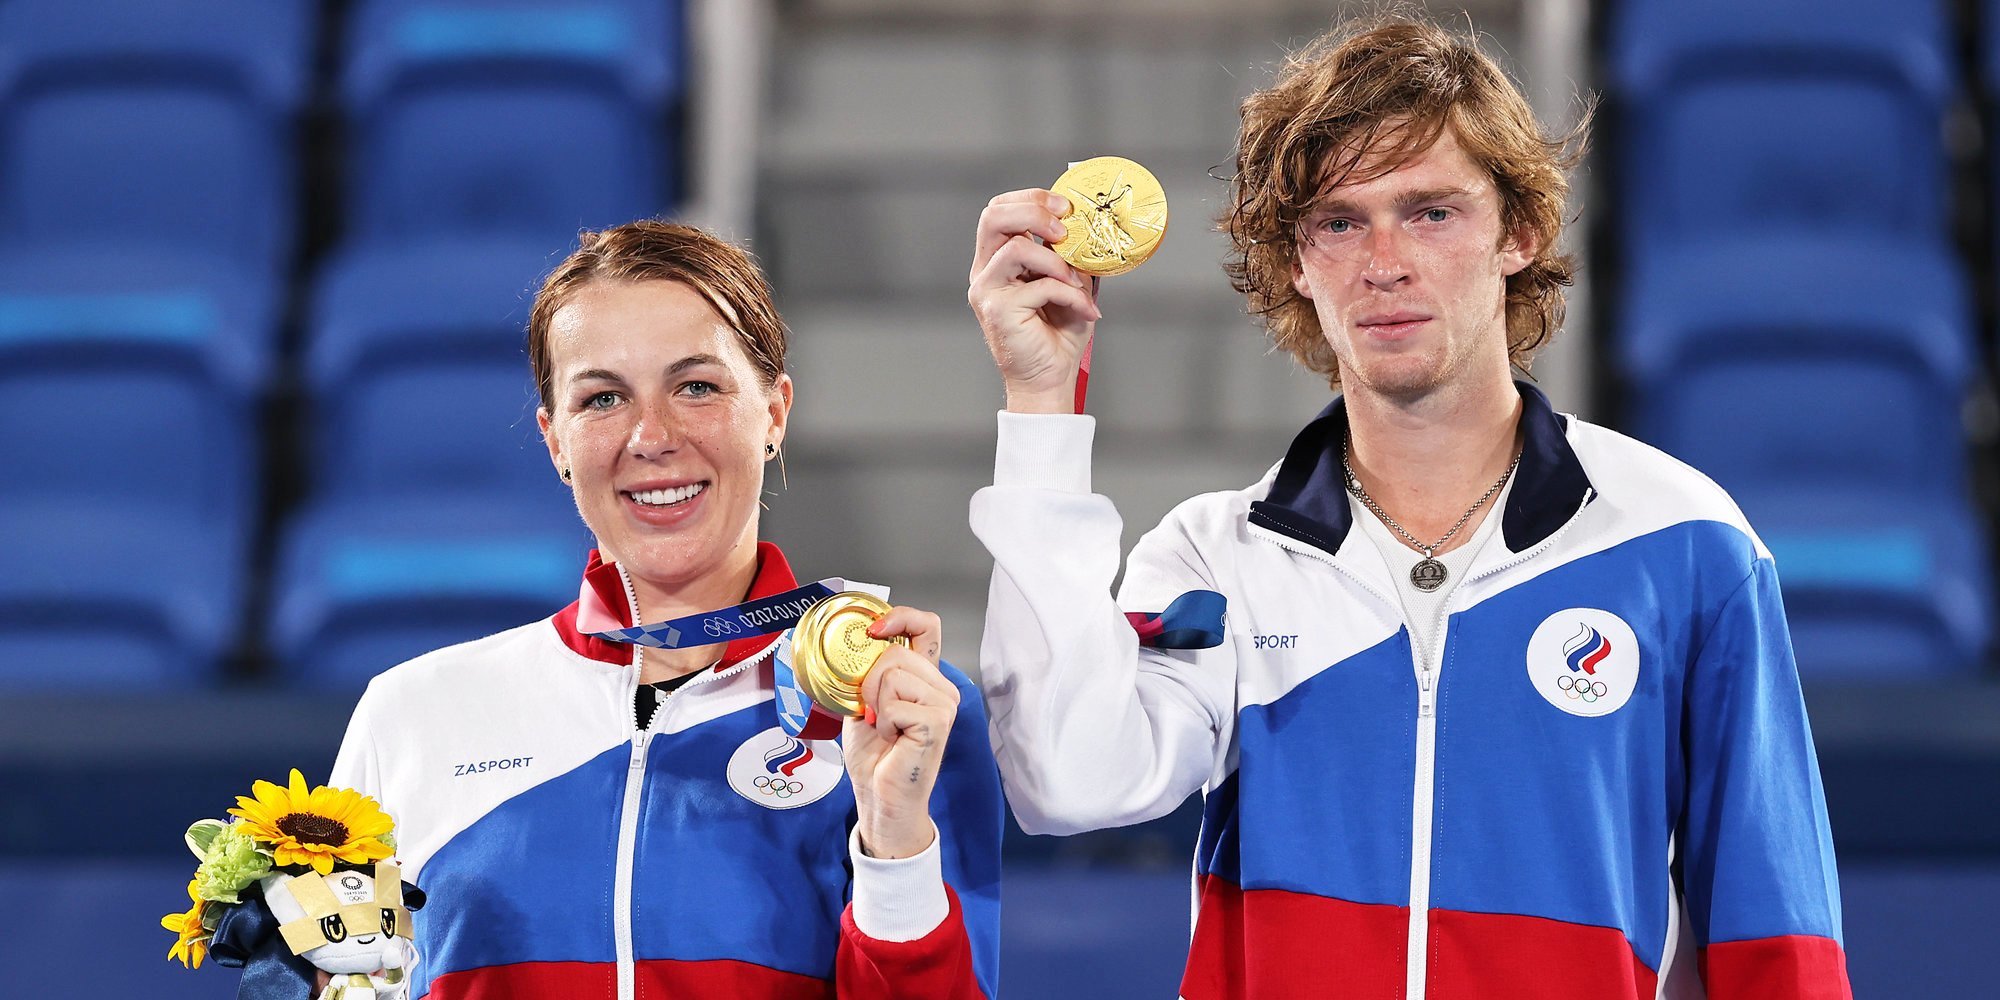 Медаль Олимпиады перевешивает участие в финале «Ролан Гаррос», заявила Павлюченкова